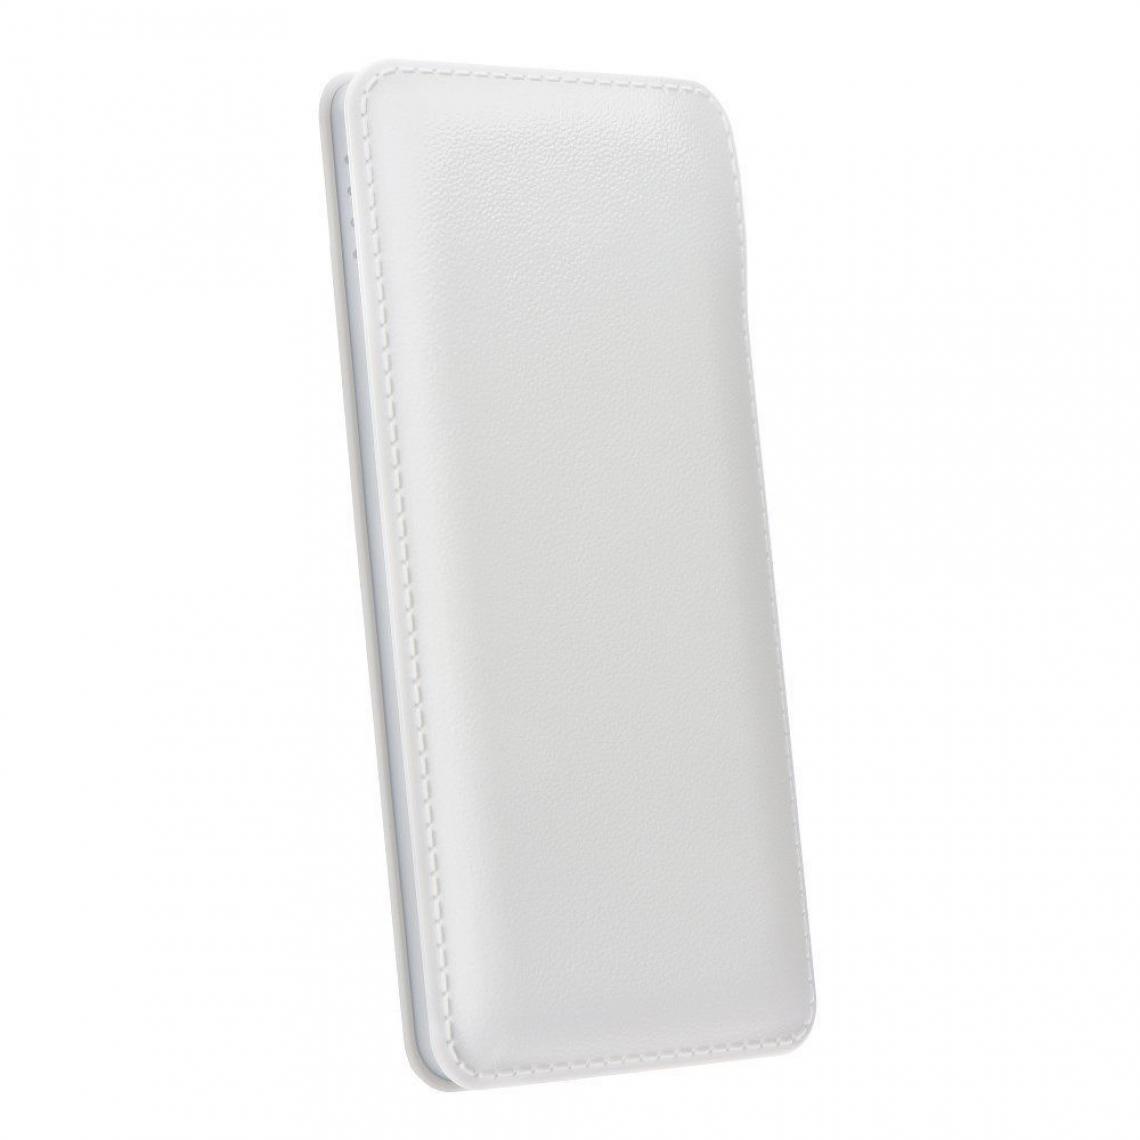 Ozzzo - Chargeur batterie externe 20000 mAh powerbank ozzzo blanc pour SAMSUNG G901 Galaxy S5 4G+ - Autres accessoires smartphone